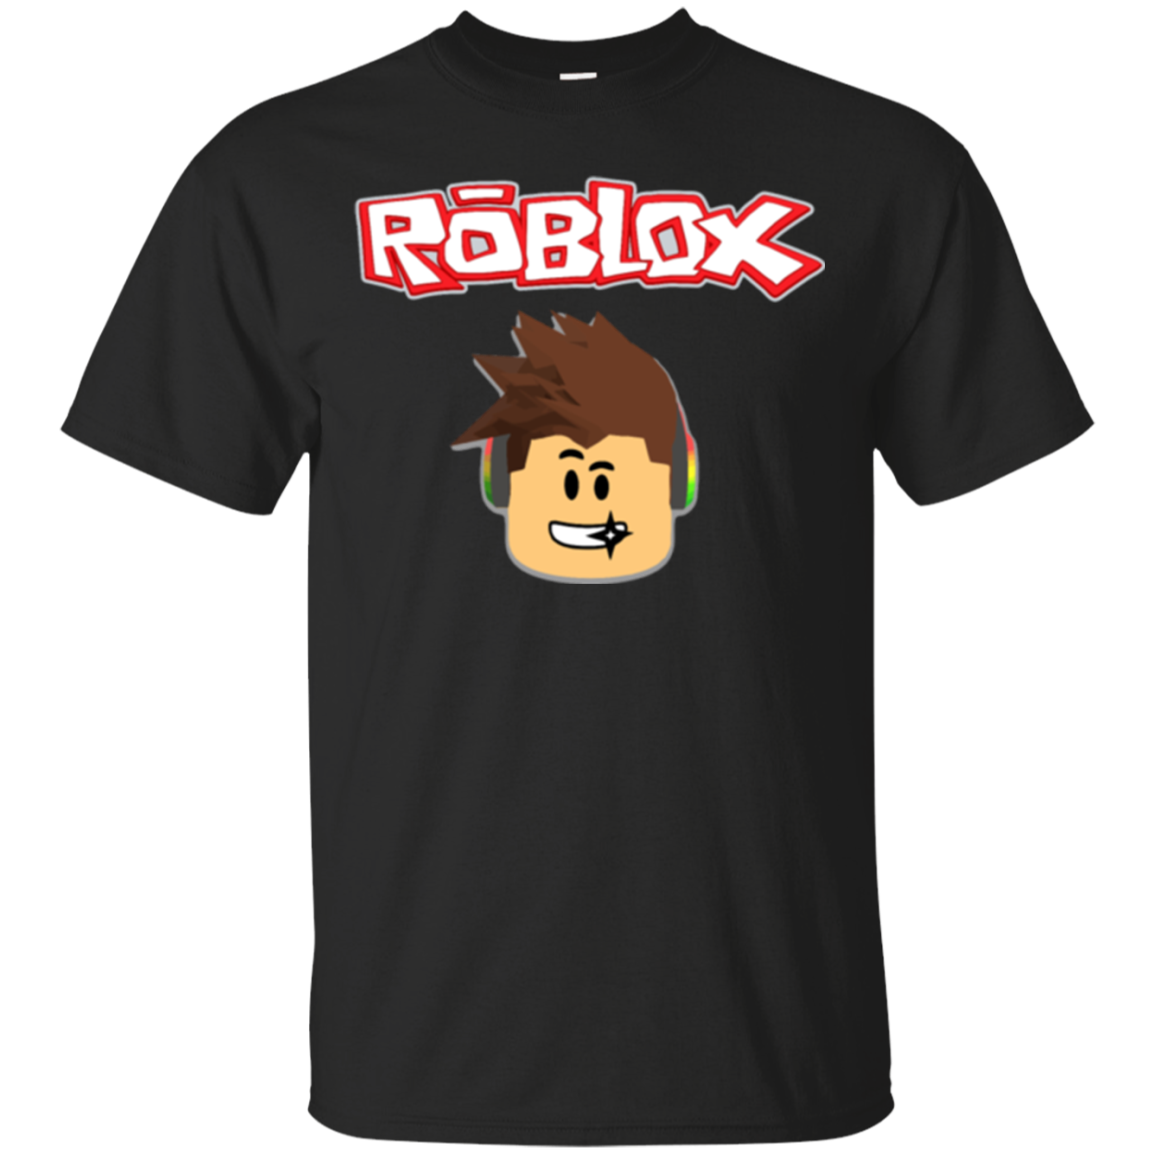 Roblox Shirts - Teesmiley